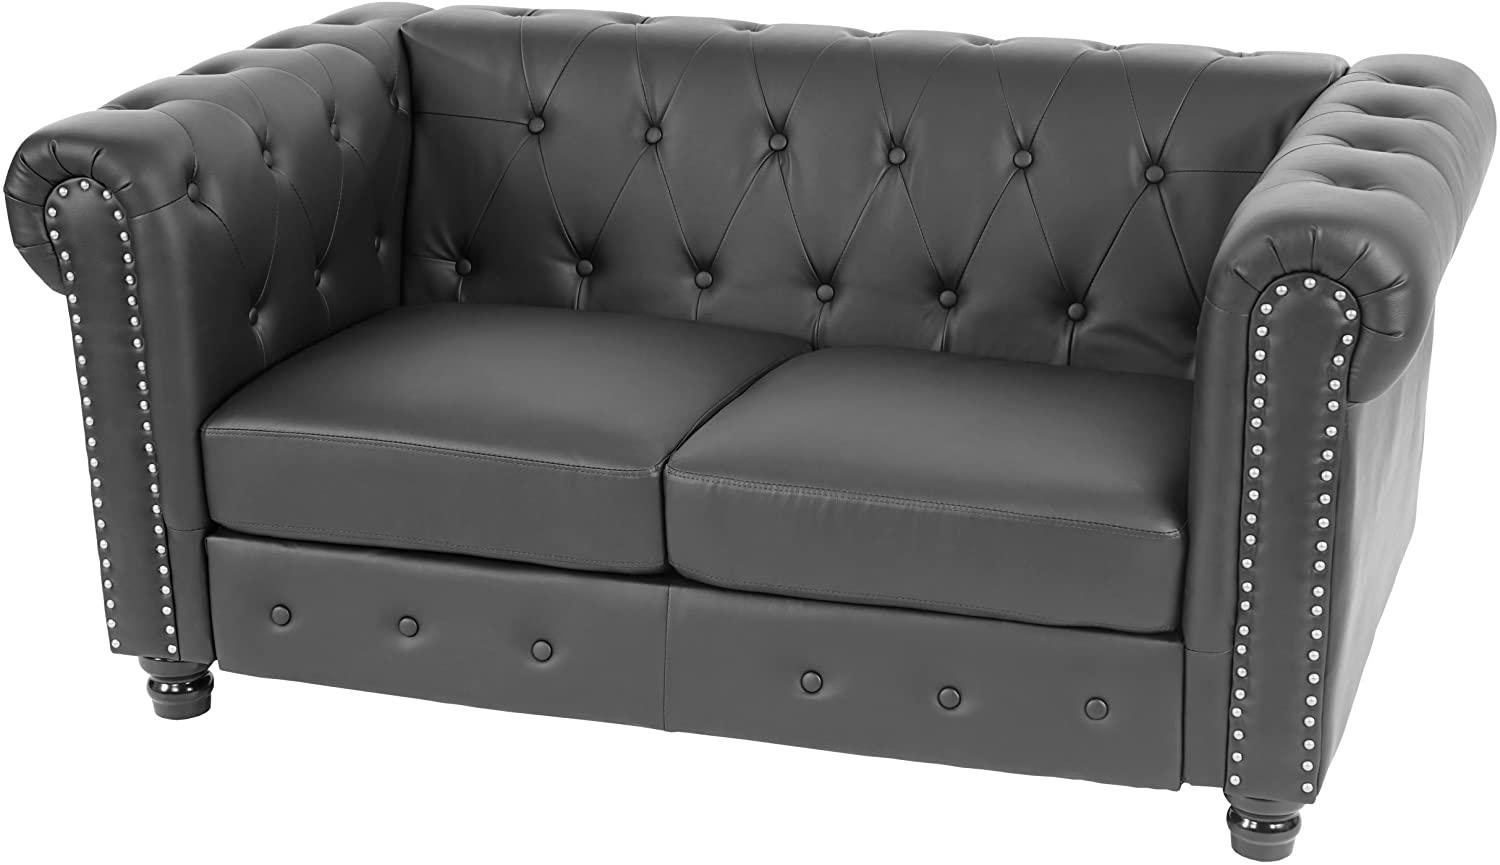 Luxus 2er Sofa Loungesofa Couch Chesterfield Kunstleder 160cm ~ runde Füße, schwarz Bild 1